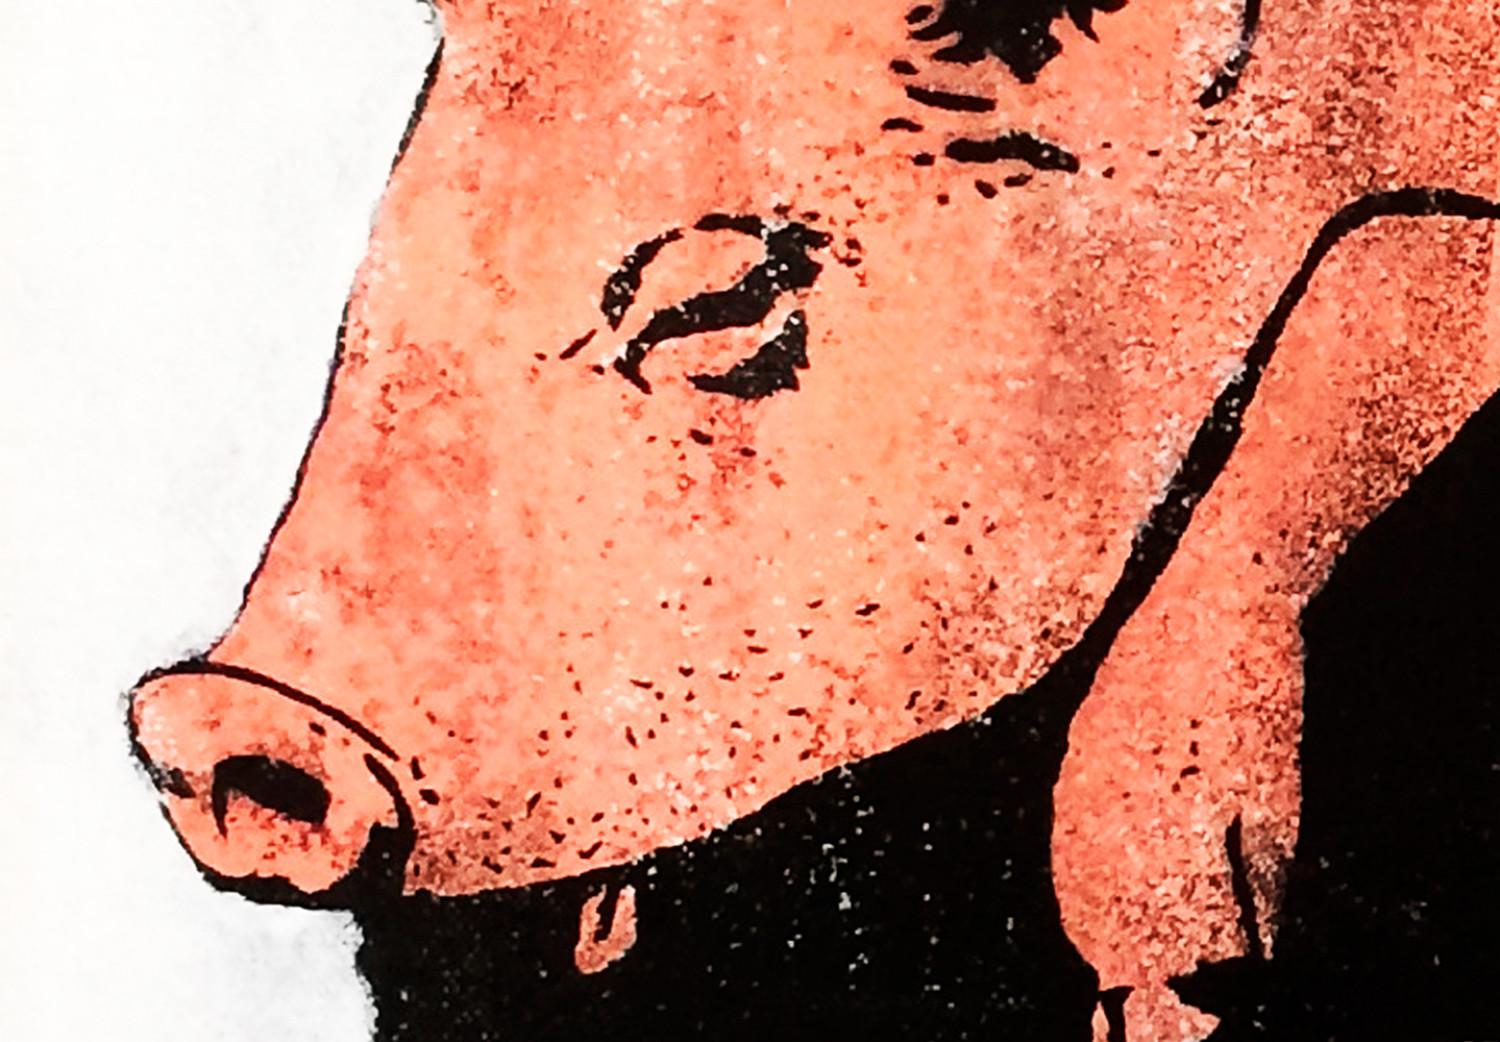 Cartel Police Pig [Poster]